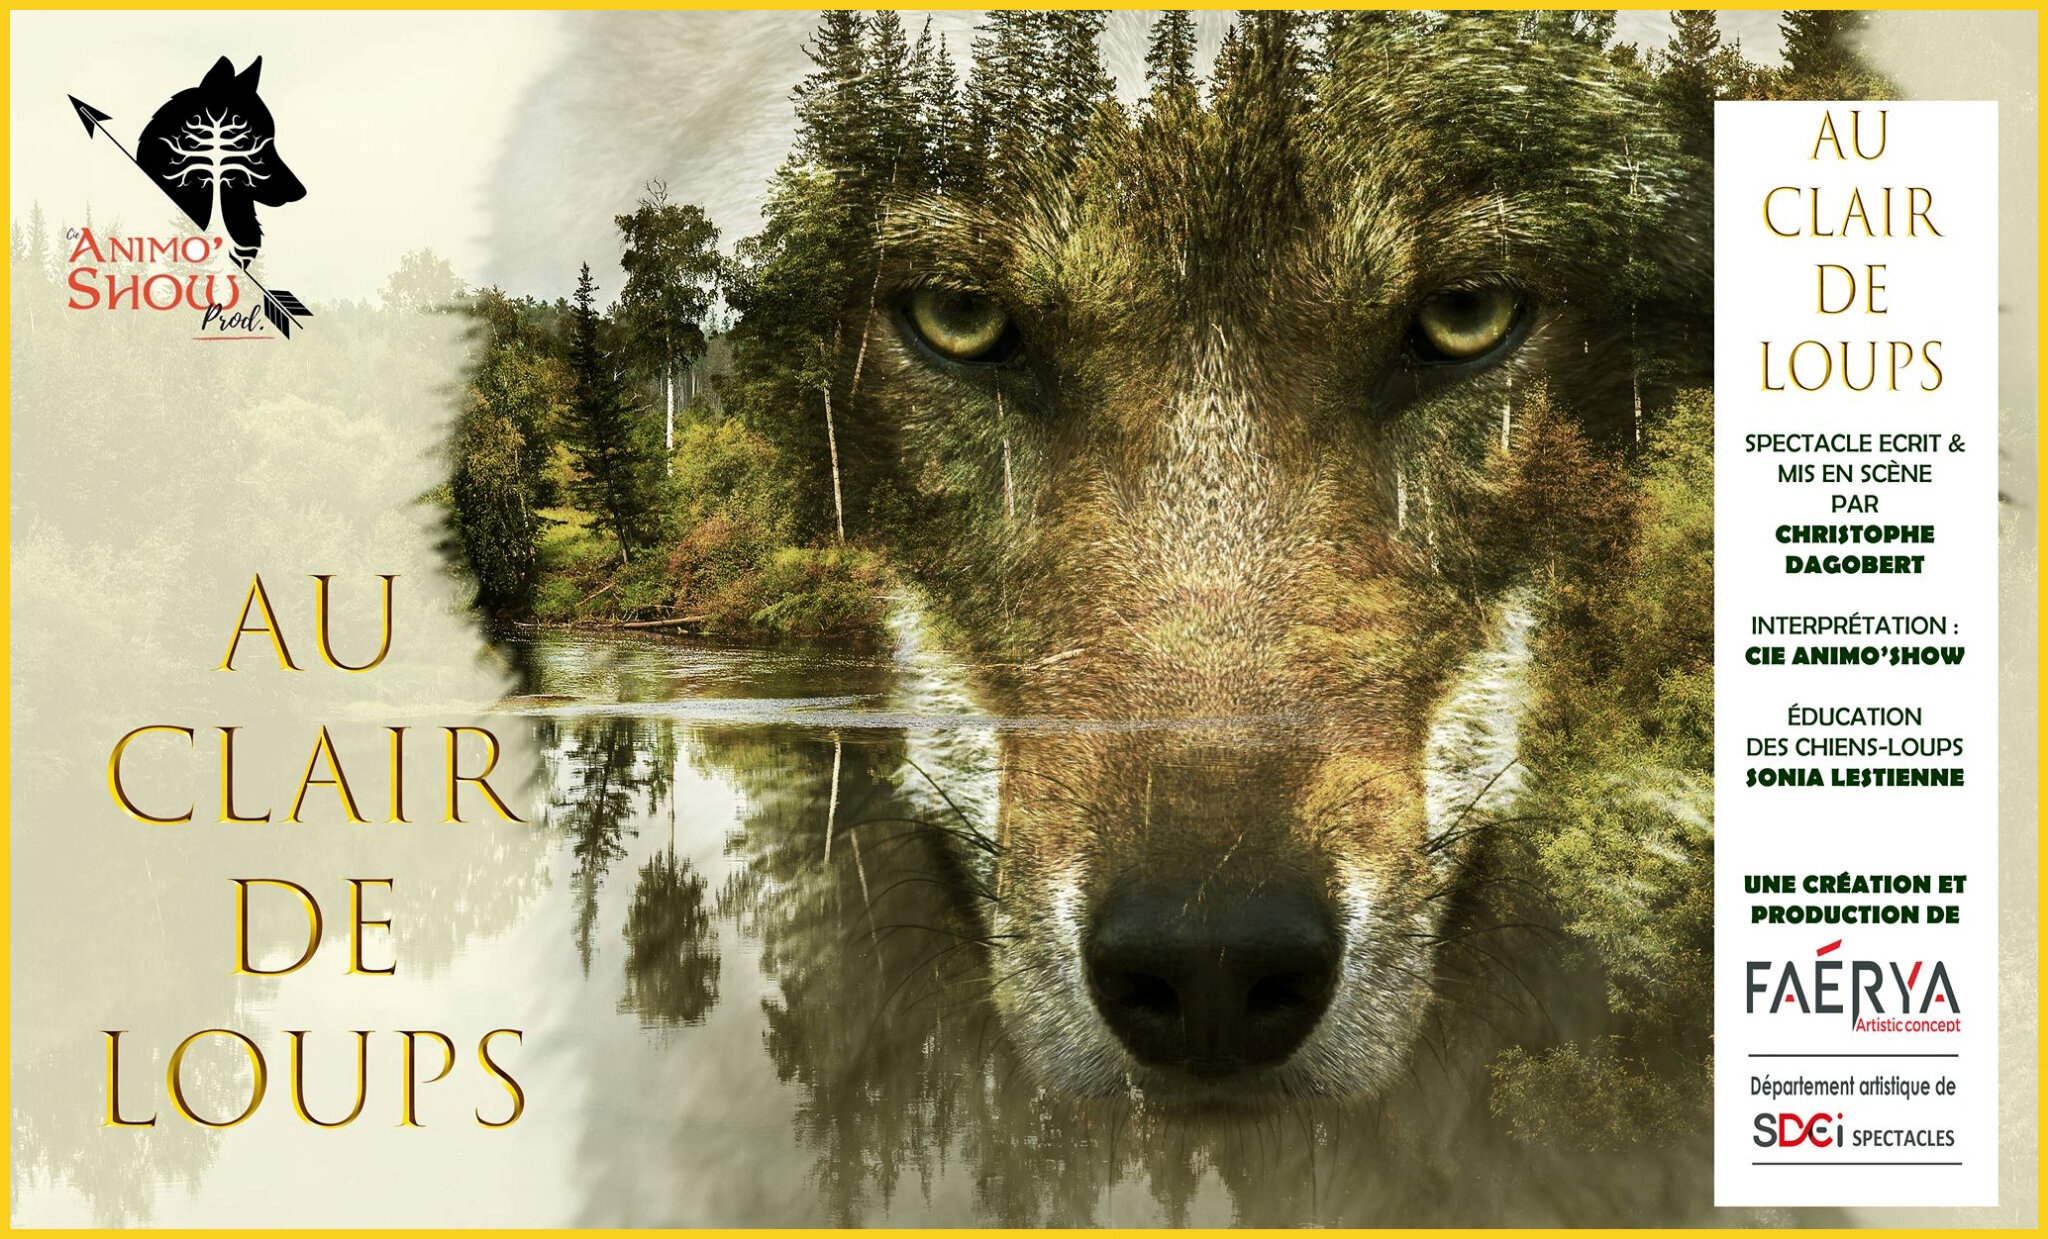 RÃ©sultat de recherche d'images pour "au clair de loups dagobert"